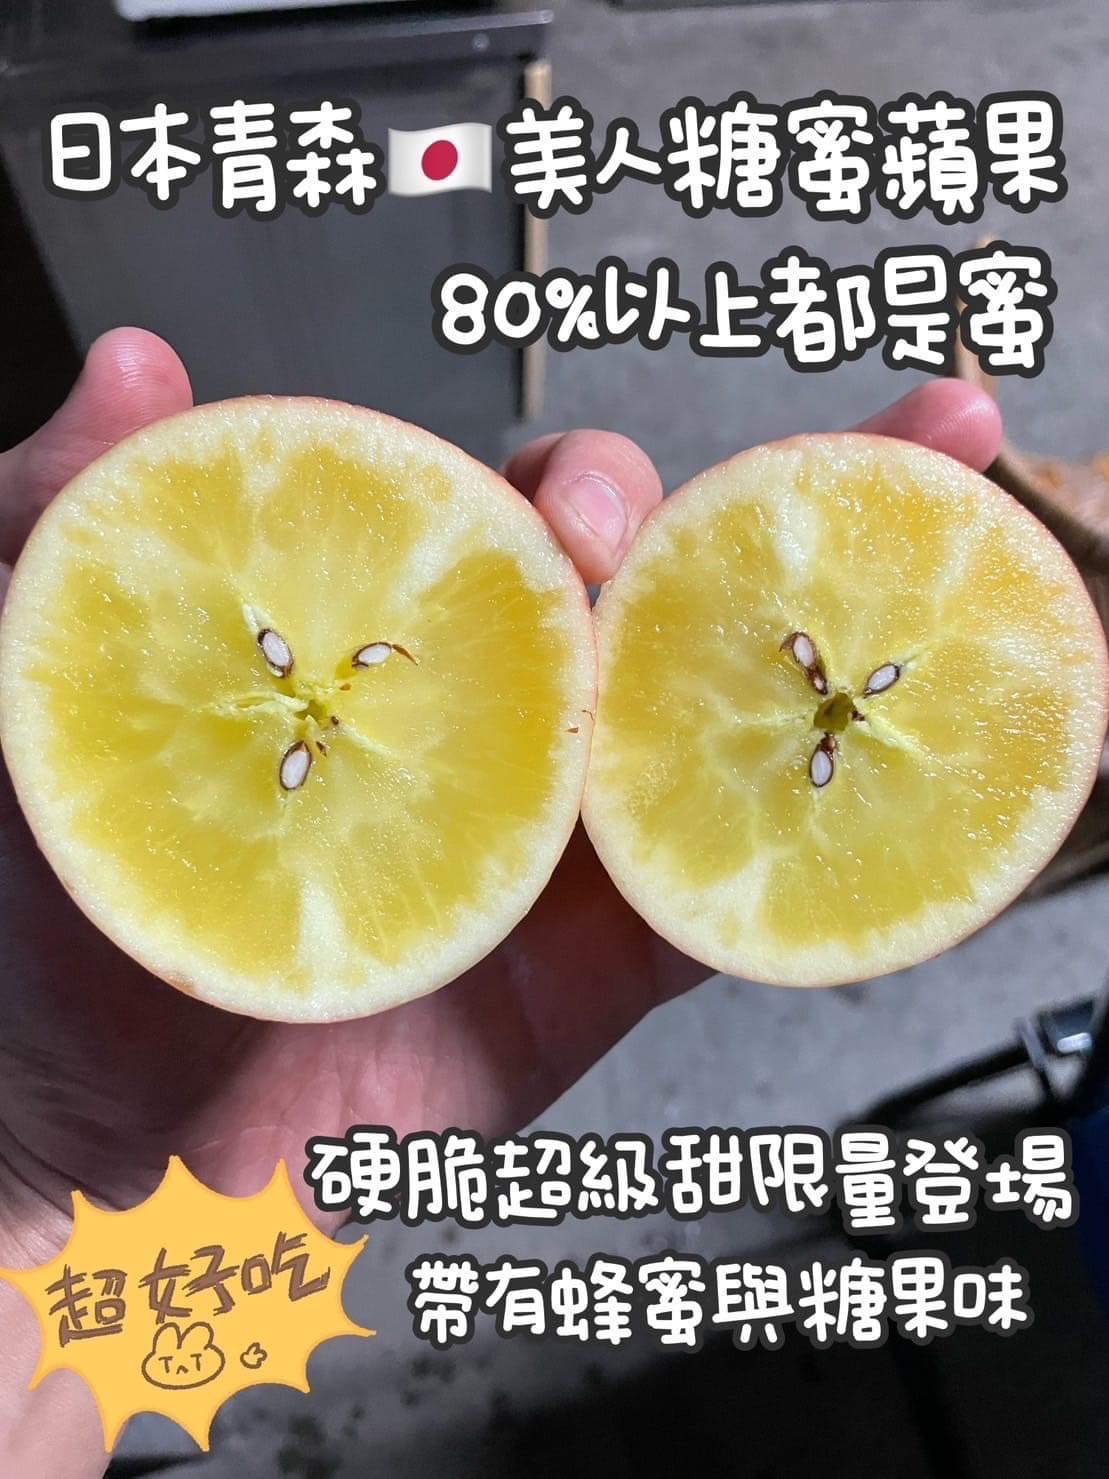 【專業農】日本 青森《極限量 神級蜜蘋果品種》✨頂級 美人 糖蜜蘋果 8玉禮盒